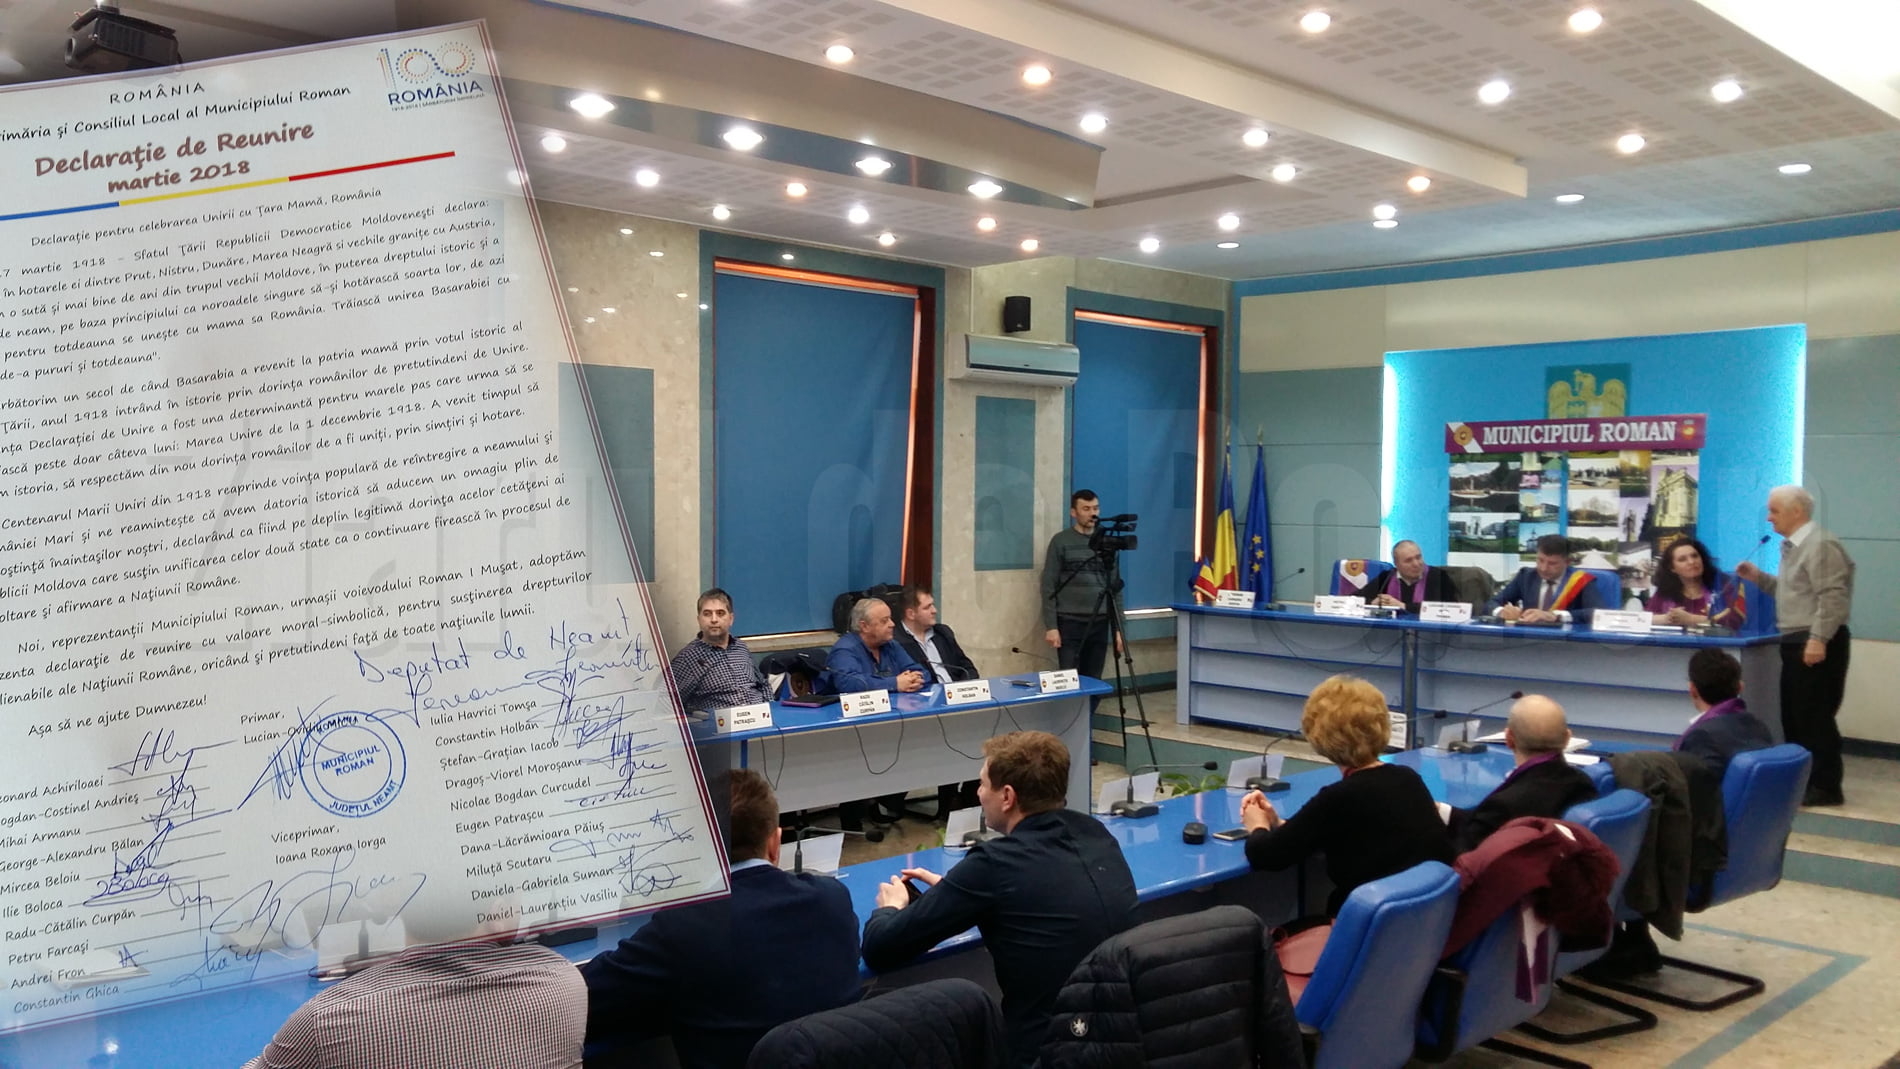 Declarație de reunire a Basarabiei cu România, semnată joi în ședința Consiliului Local Roman